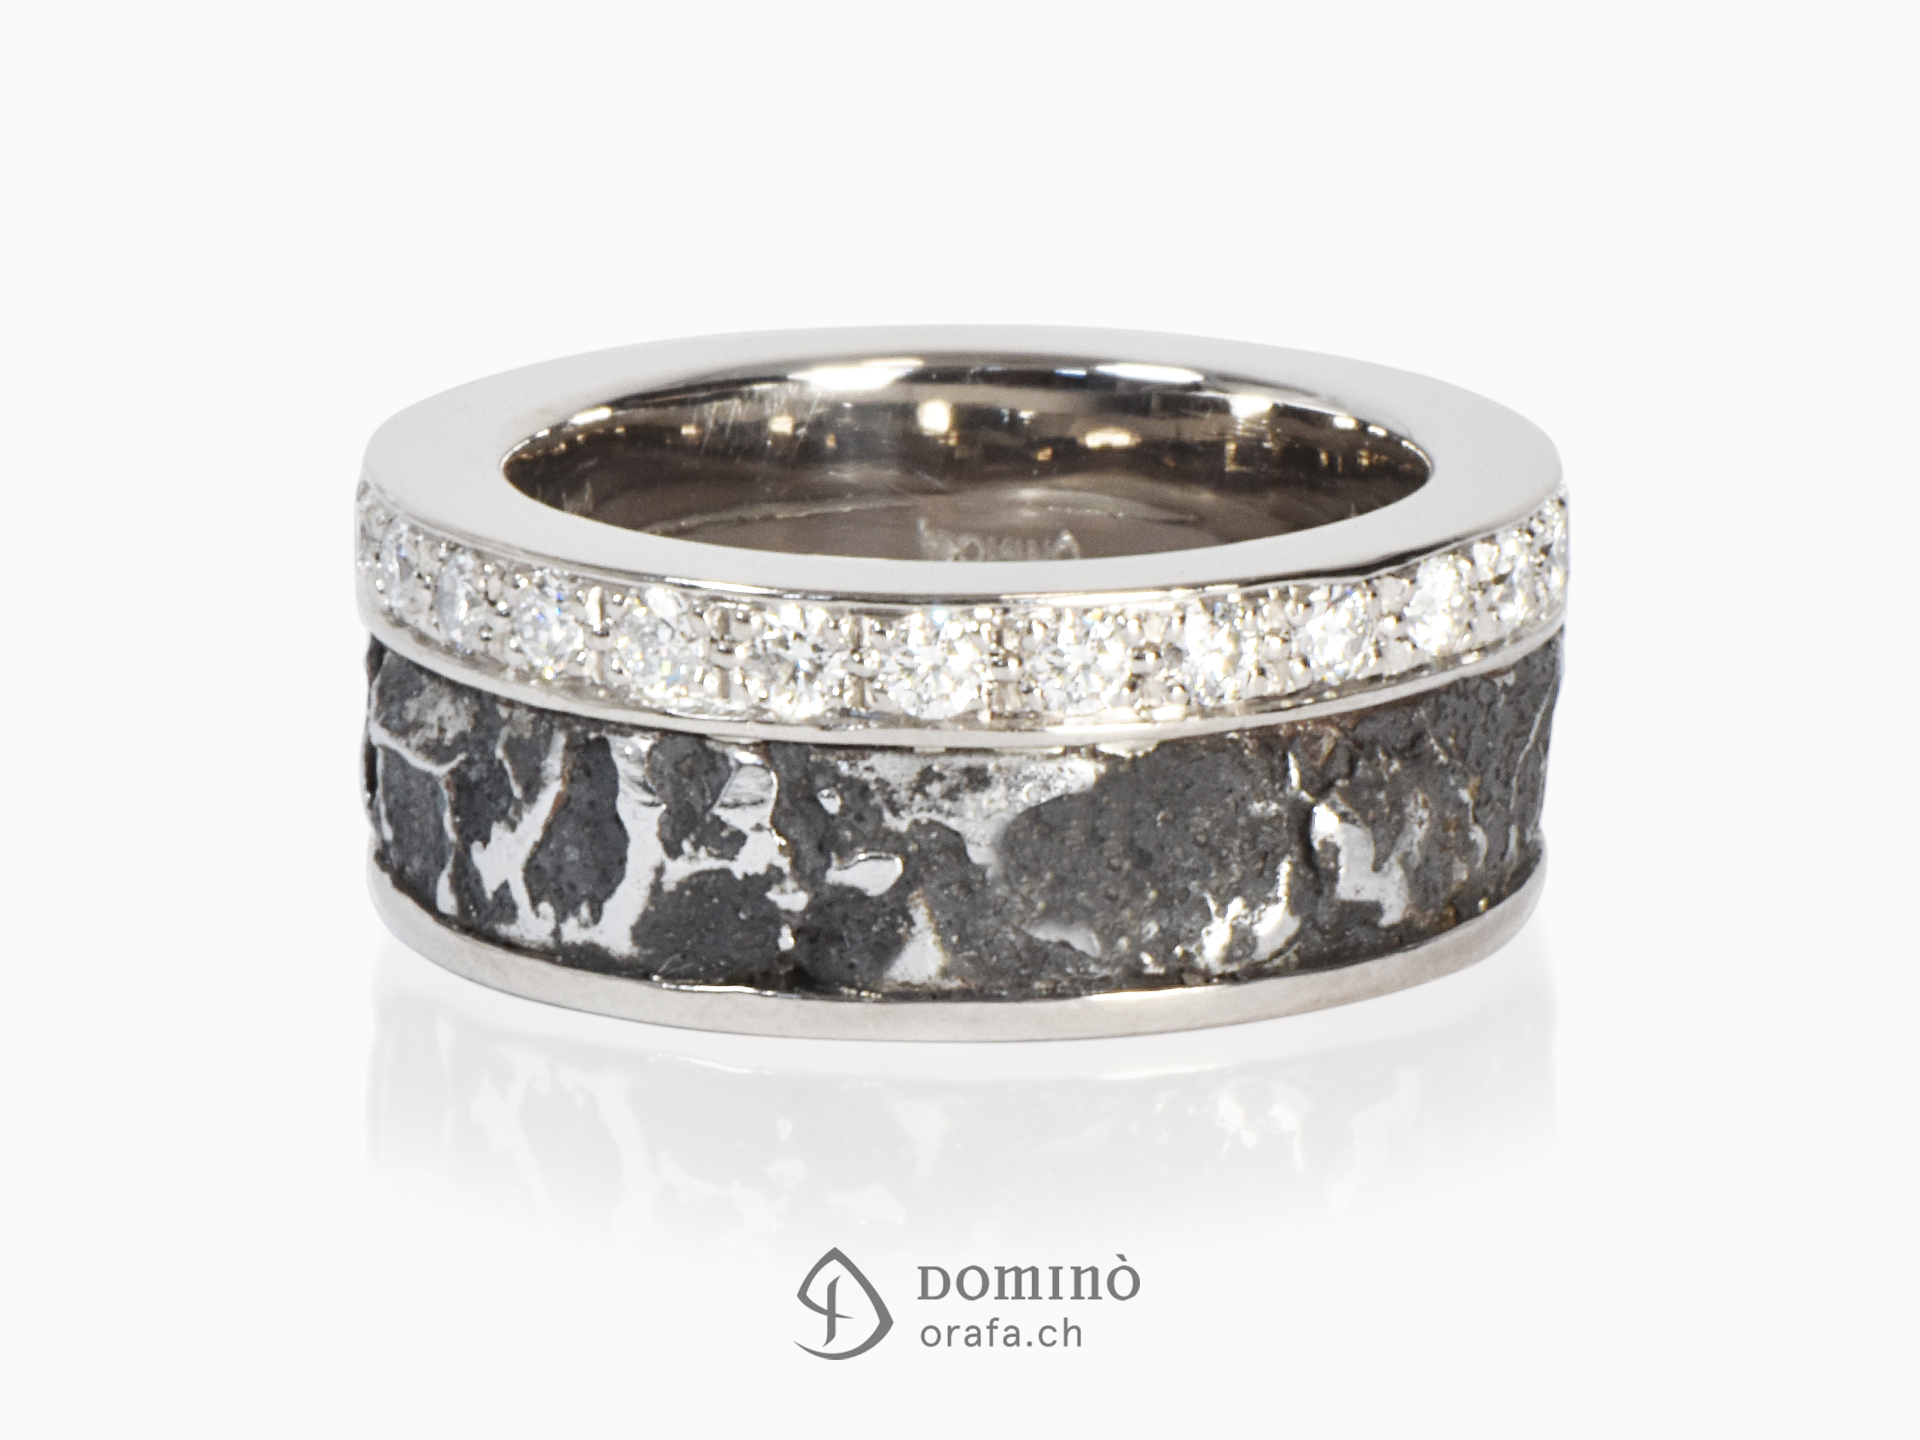 Ferro prezioso ring with diamonds